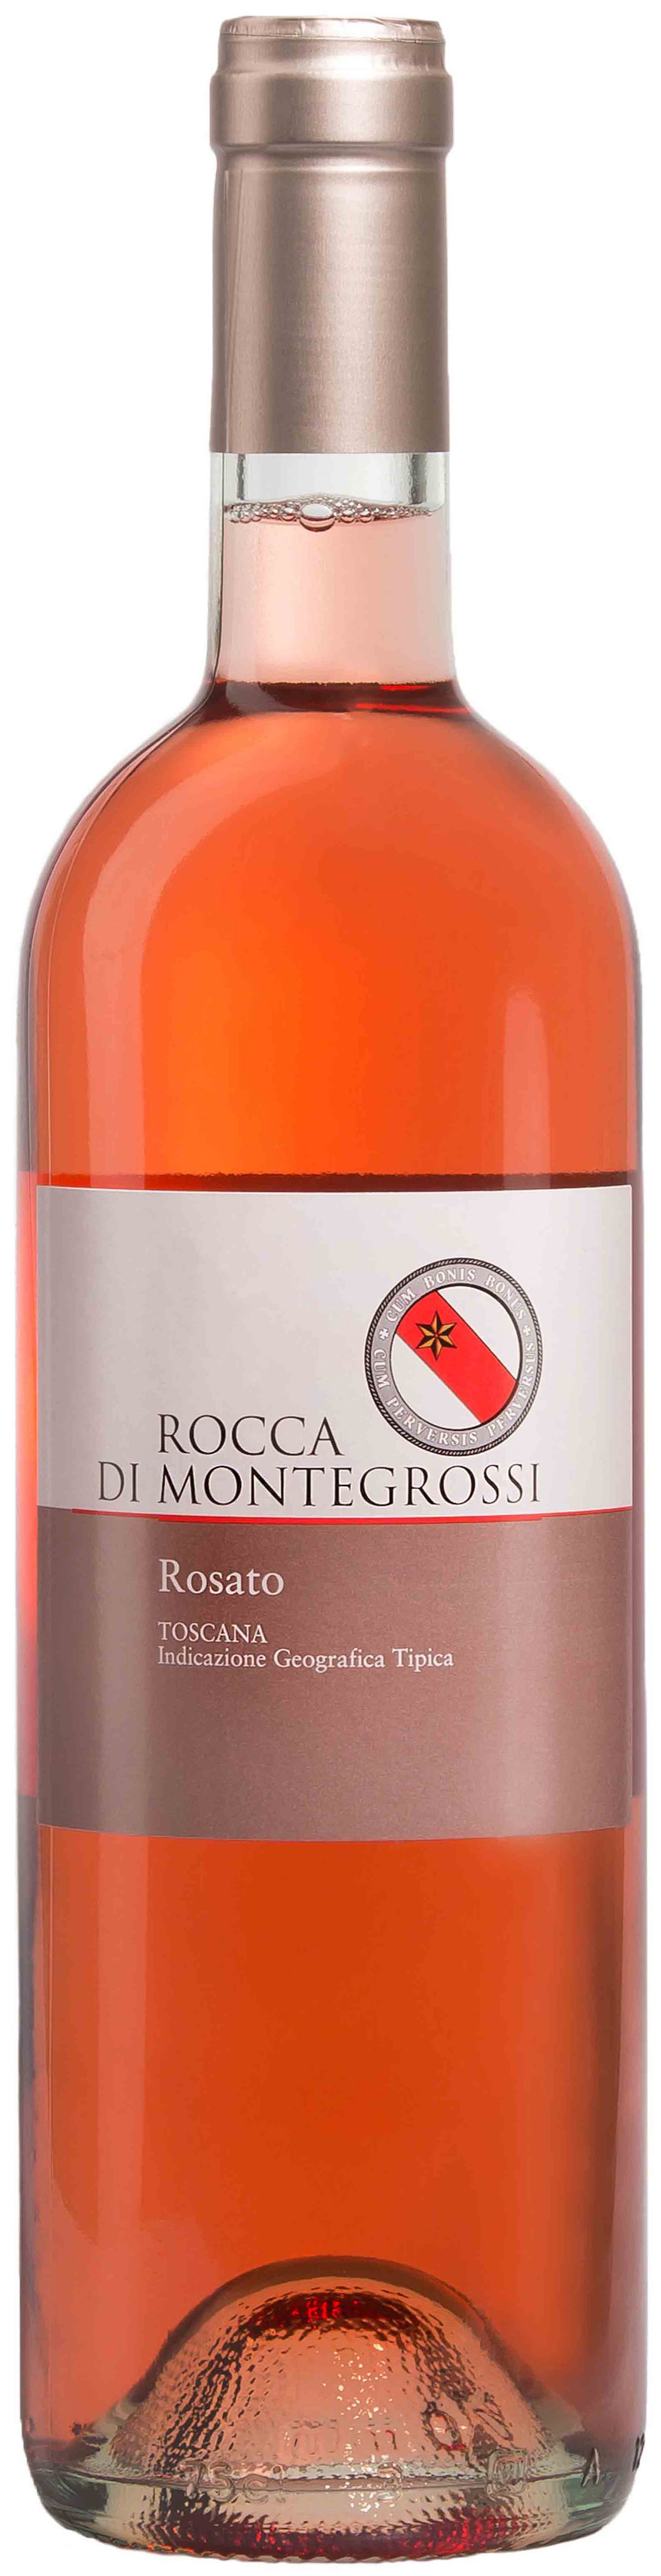 Rocca Di Montegrossi, Rosato, 2017